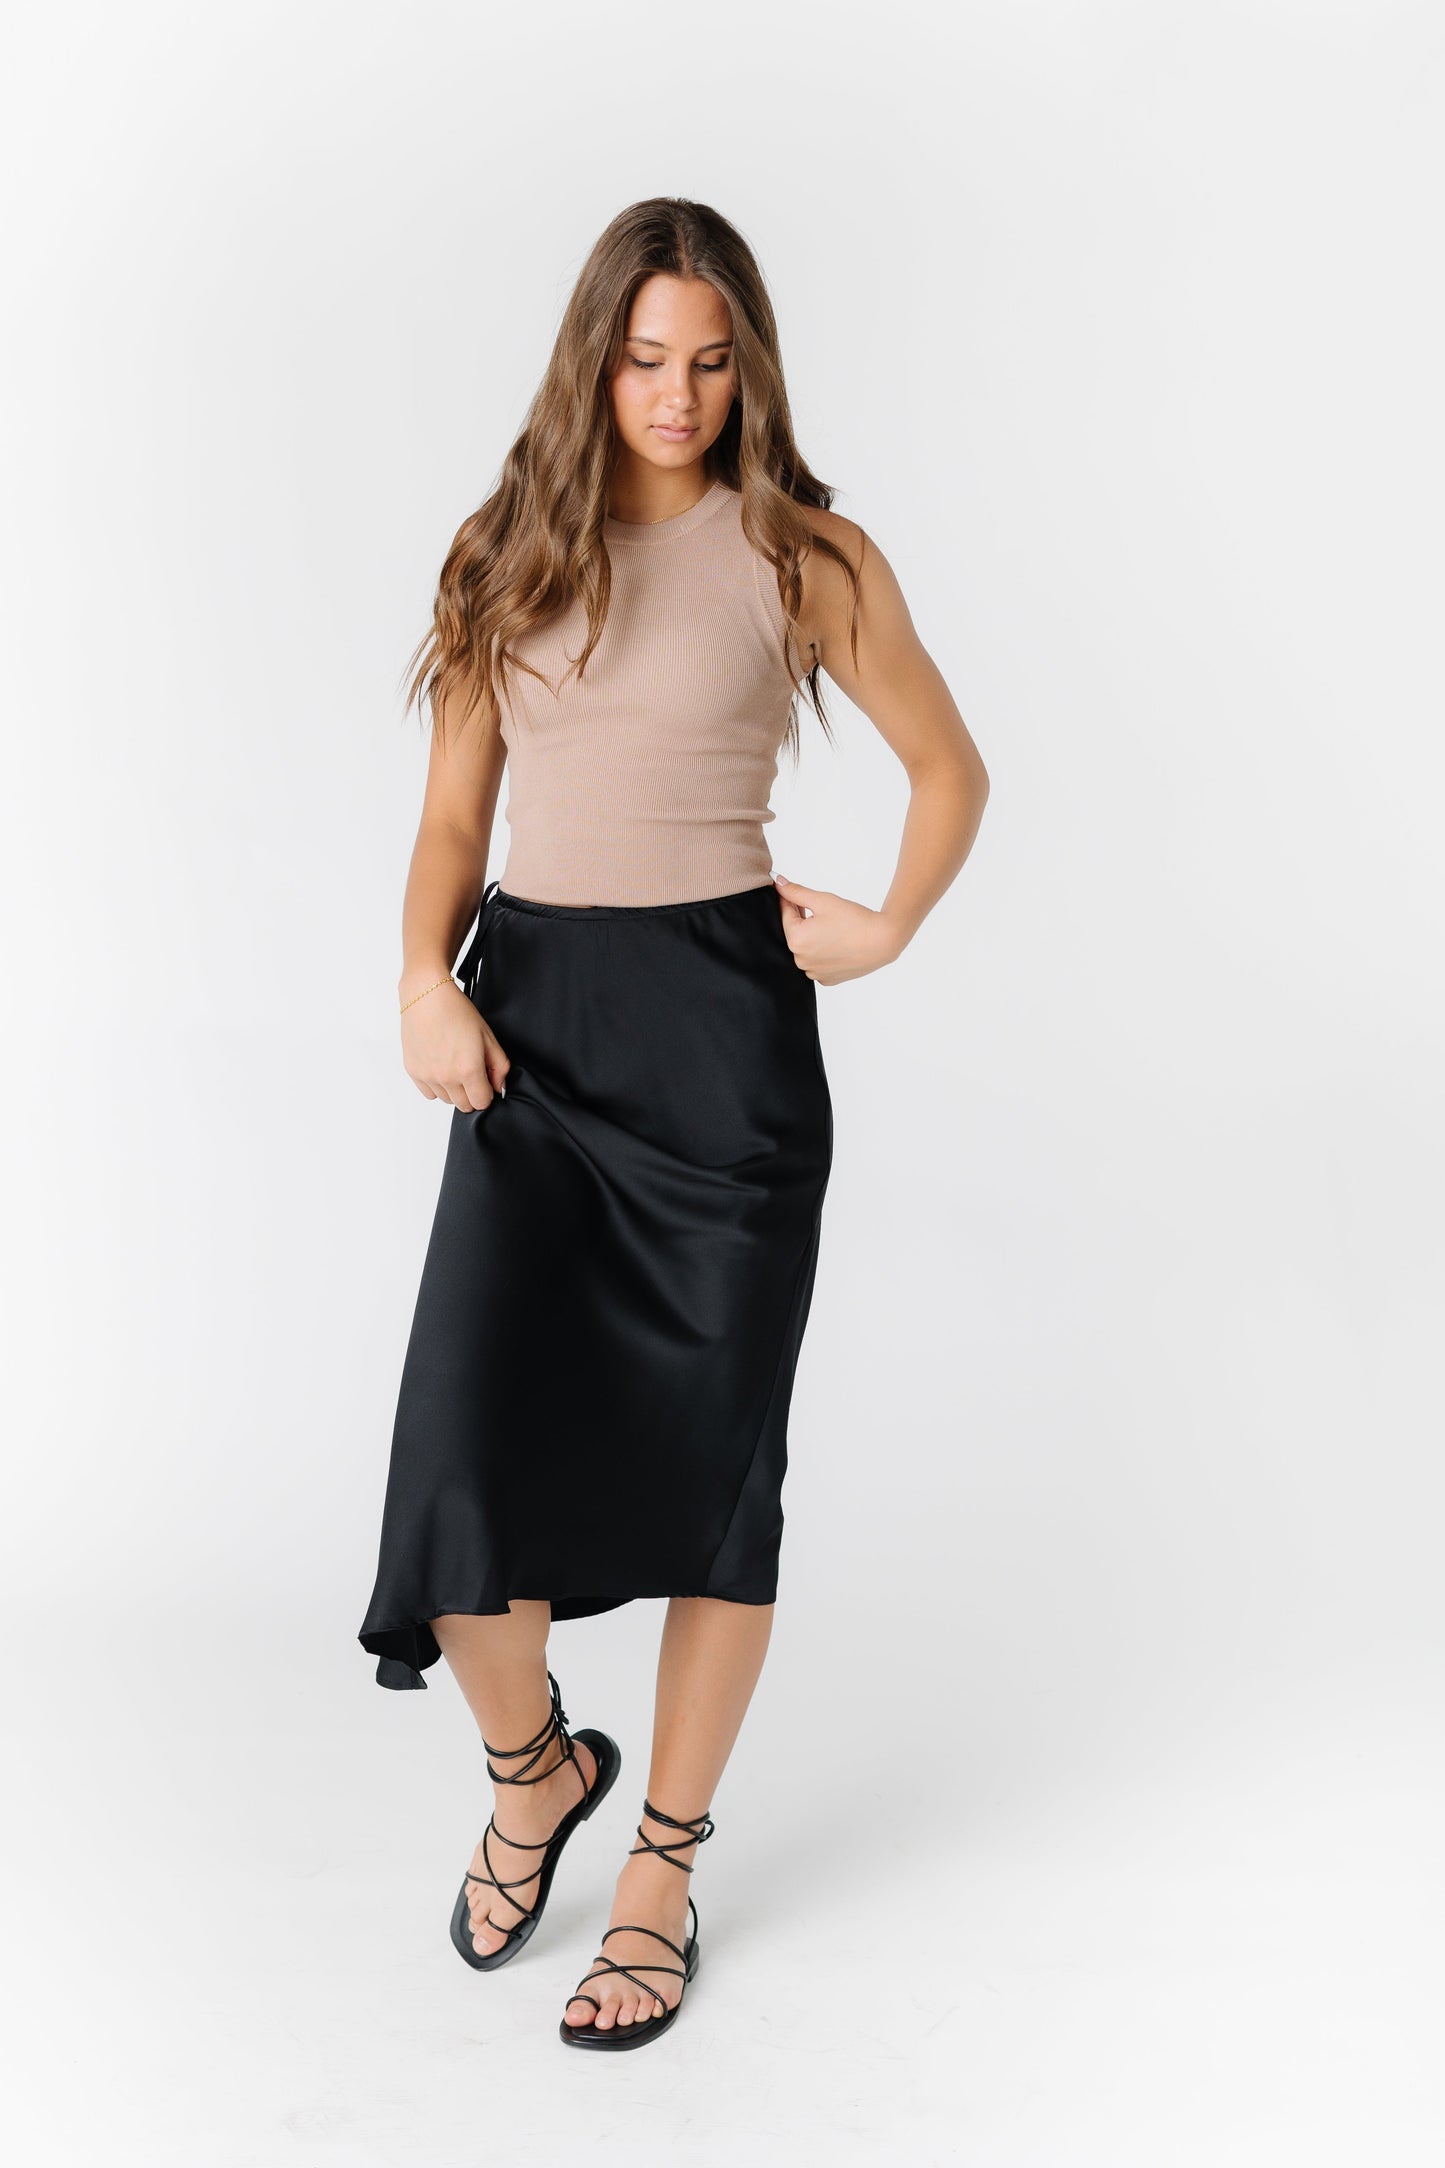 Sunrise Satin Skirt WOMEN'S SKIRTS Mod Ref Black L 